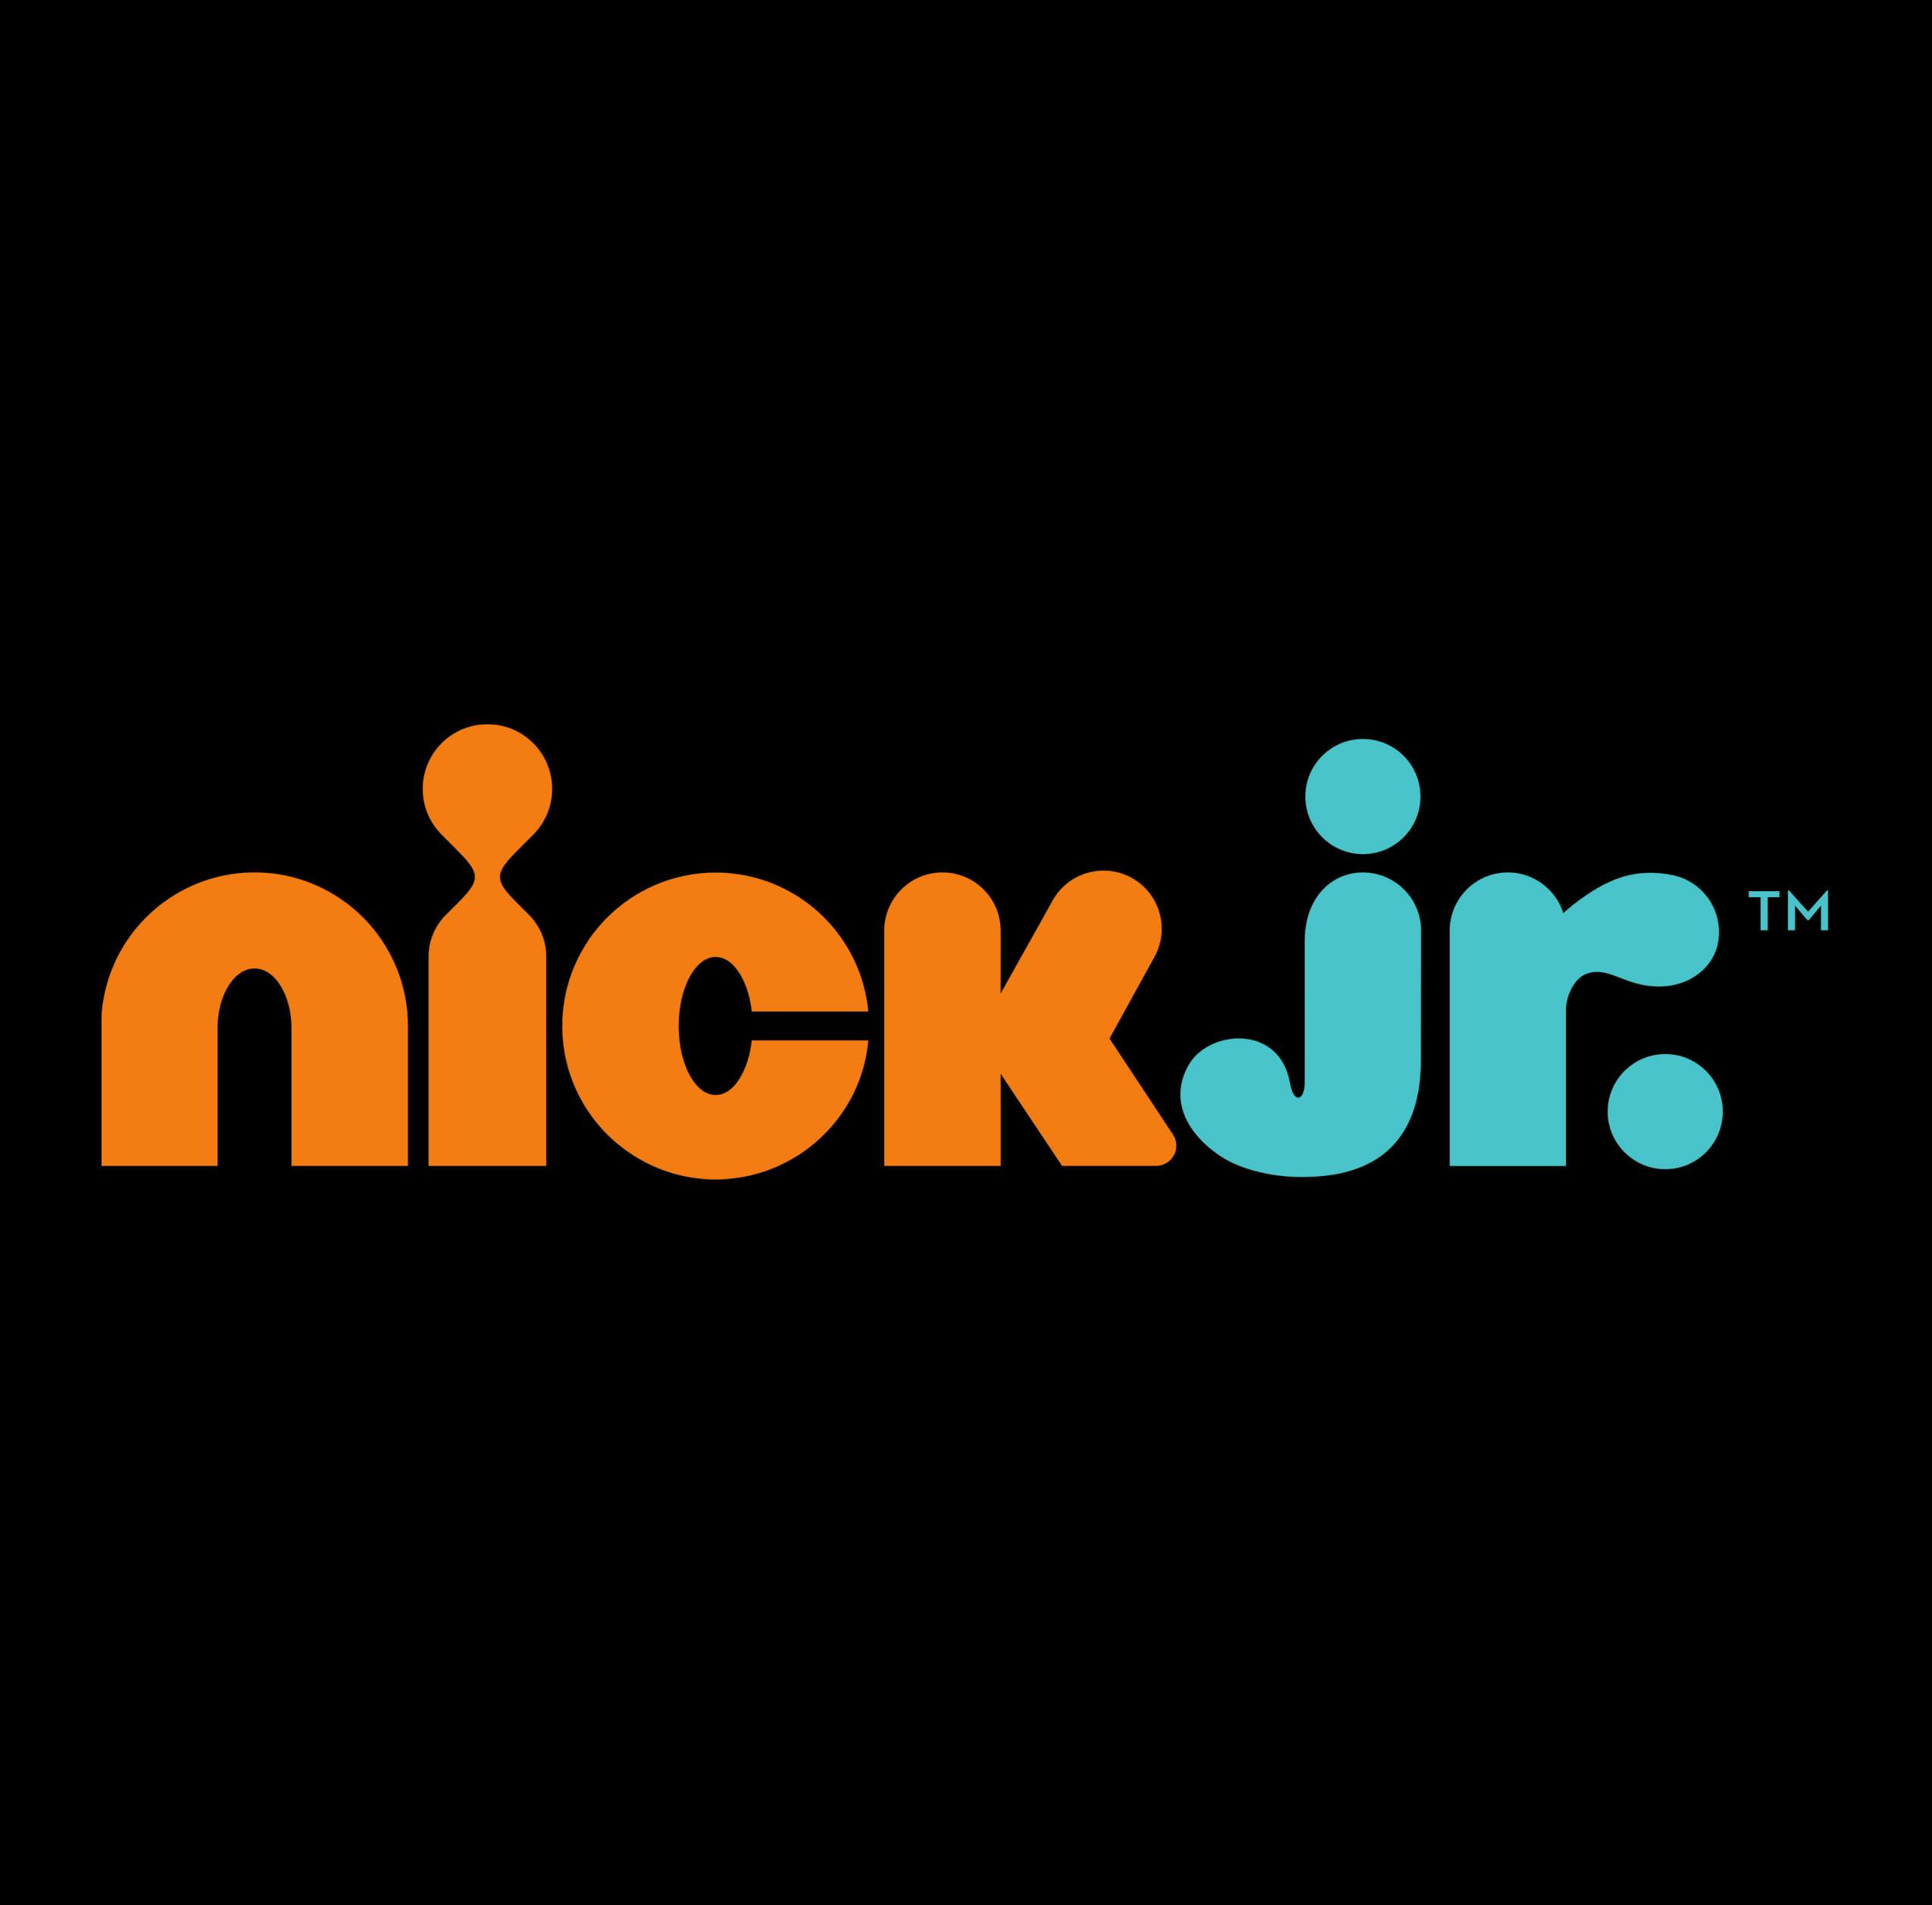 nick jr logo 2022